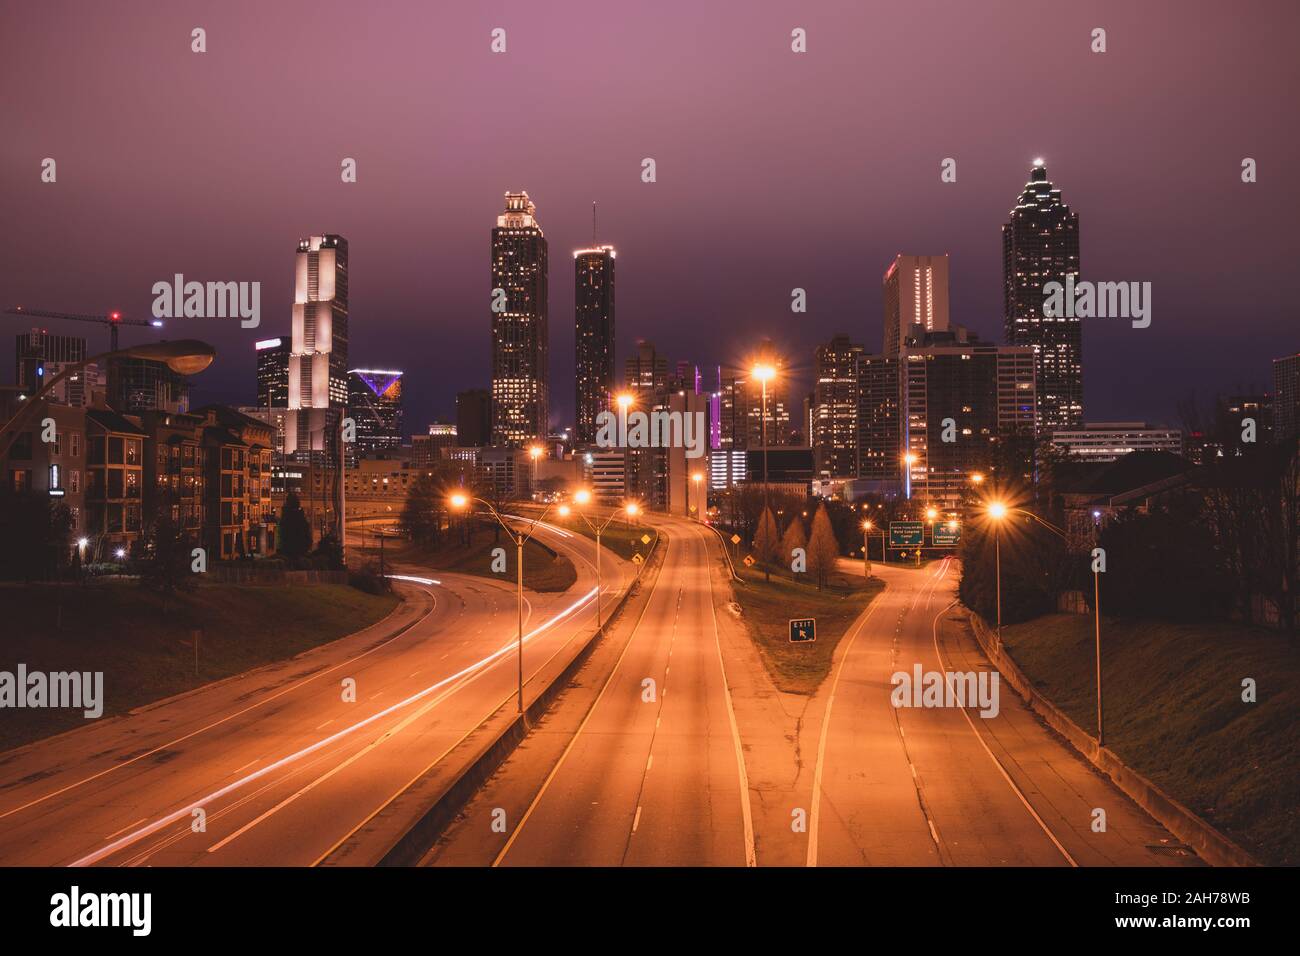 Atlanta city night panoramic view skyline, Georgia, USA Stock Photo